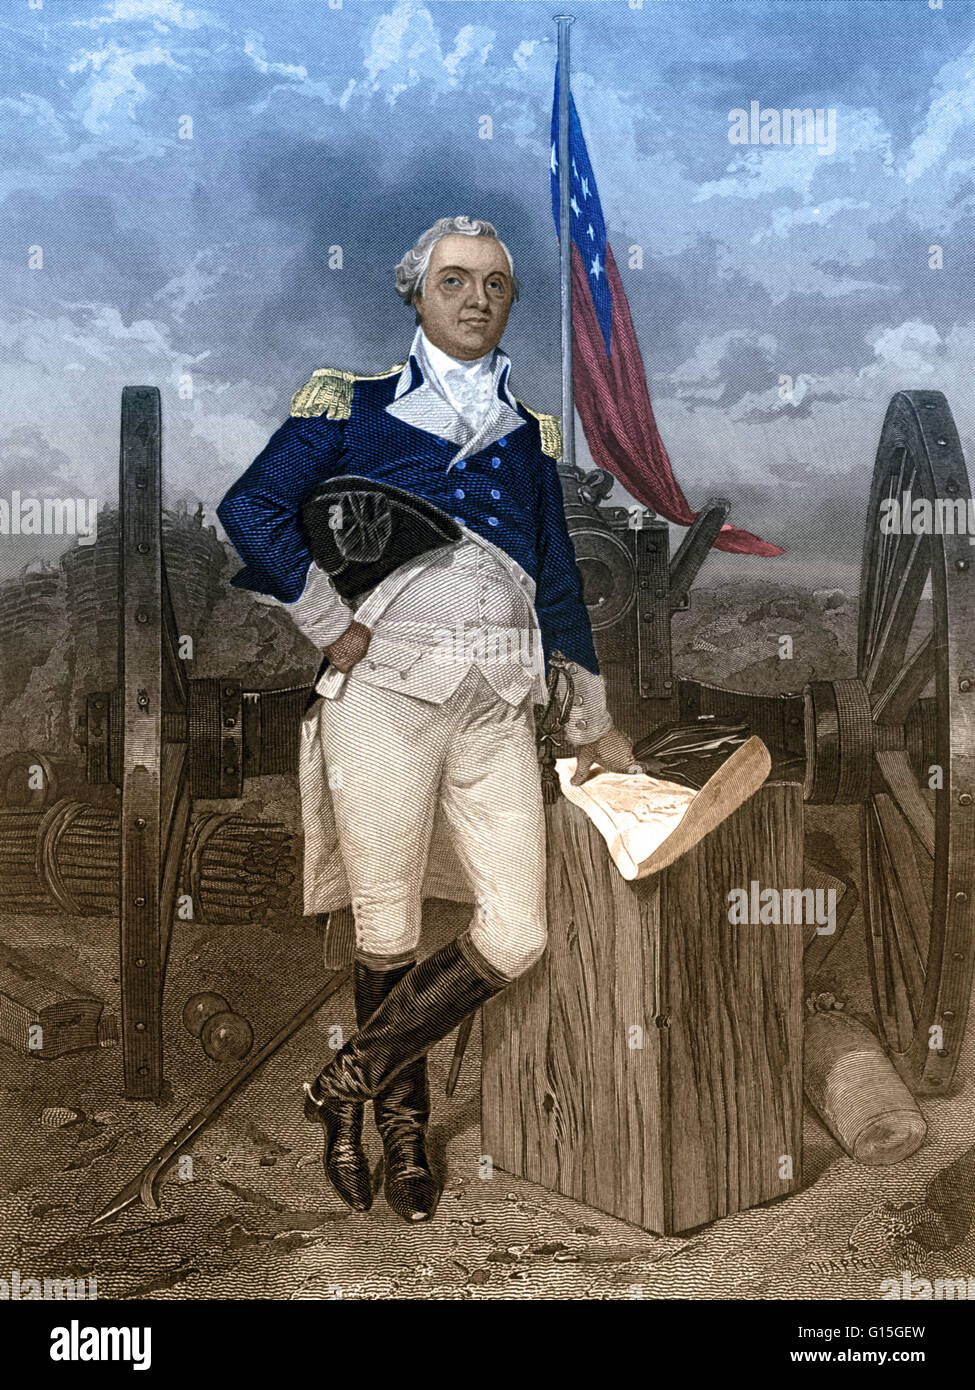 Henry Knox (Luglio 25, 1750 - 25 ottobre 1806) è stato il primo negli Stati Uniti il Segretario di guerra. Quando la guerra rivoluzionaria americana è scoppiata nel 1775, befriended generali di Washington, e rapidamente salito a diventare il capo ufficiale d'artiglieria della Continental Foto Stock